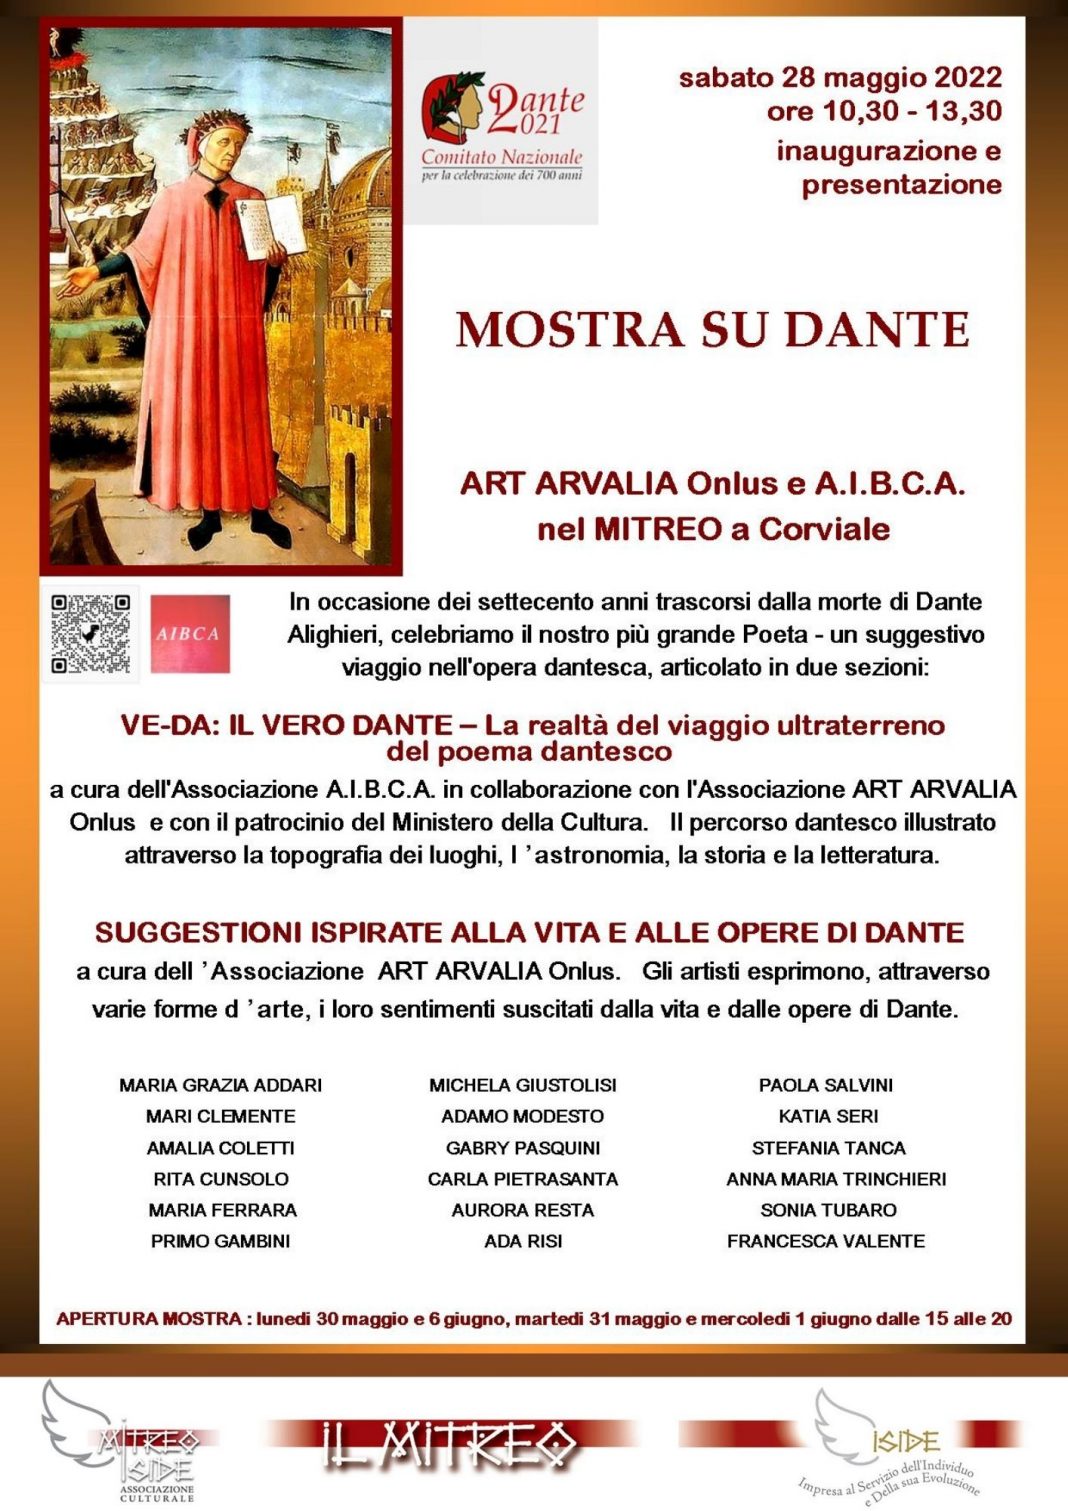 Suggestioni ispirate alla vita e alle opere di Dantehttps://www.exibart.com/repository/media/formidable/11/img/ea1/locandina-Dante-Art-Arvalia-1068x1511.jpg